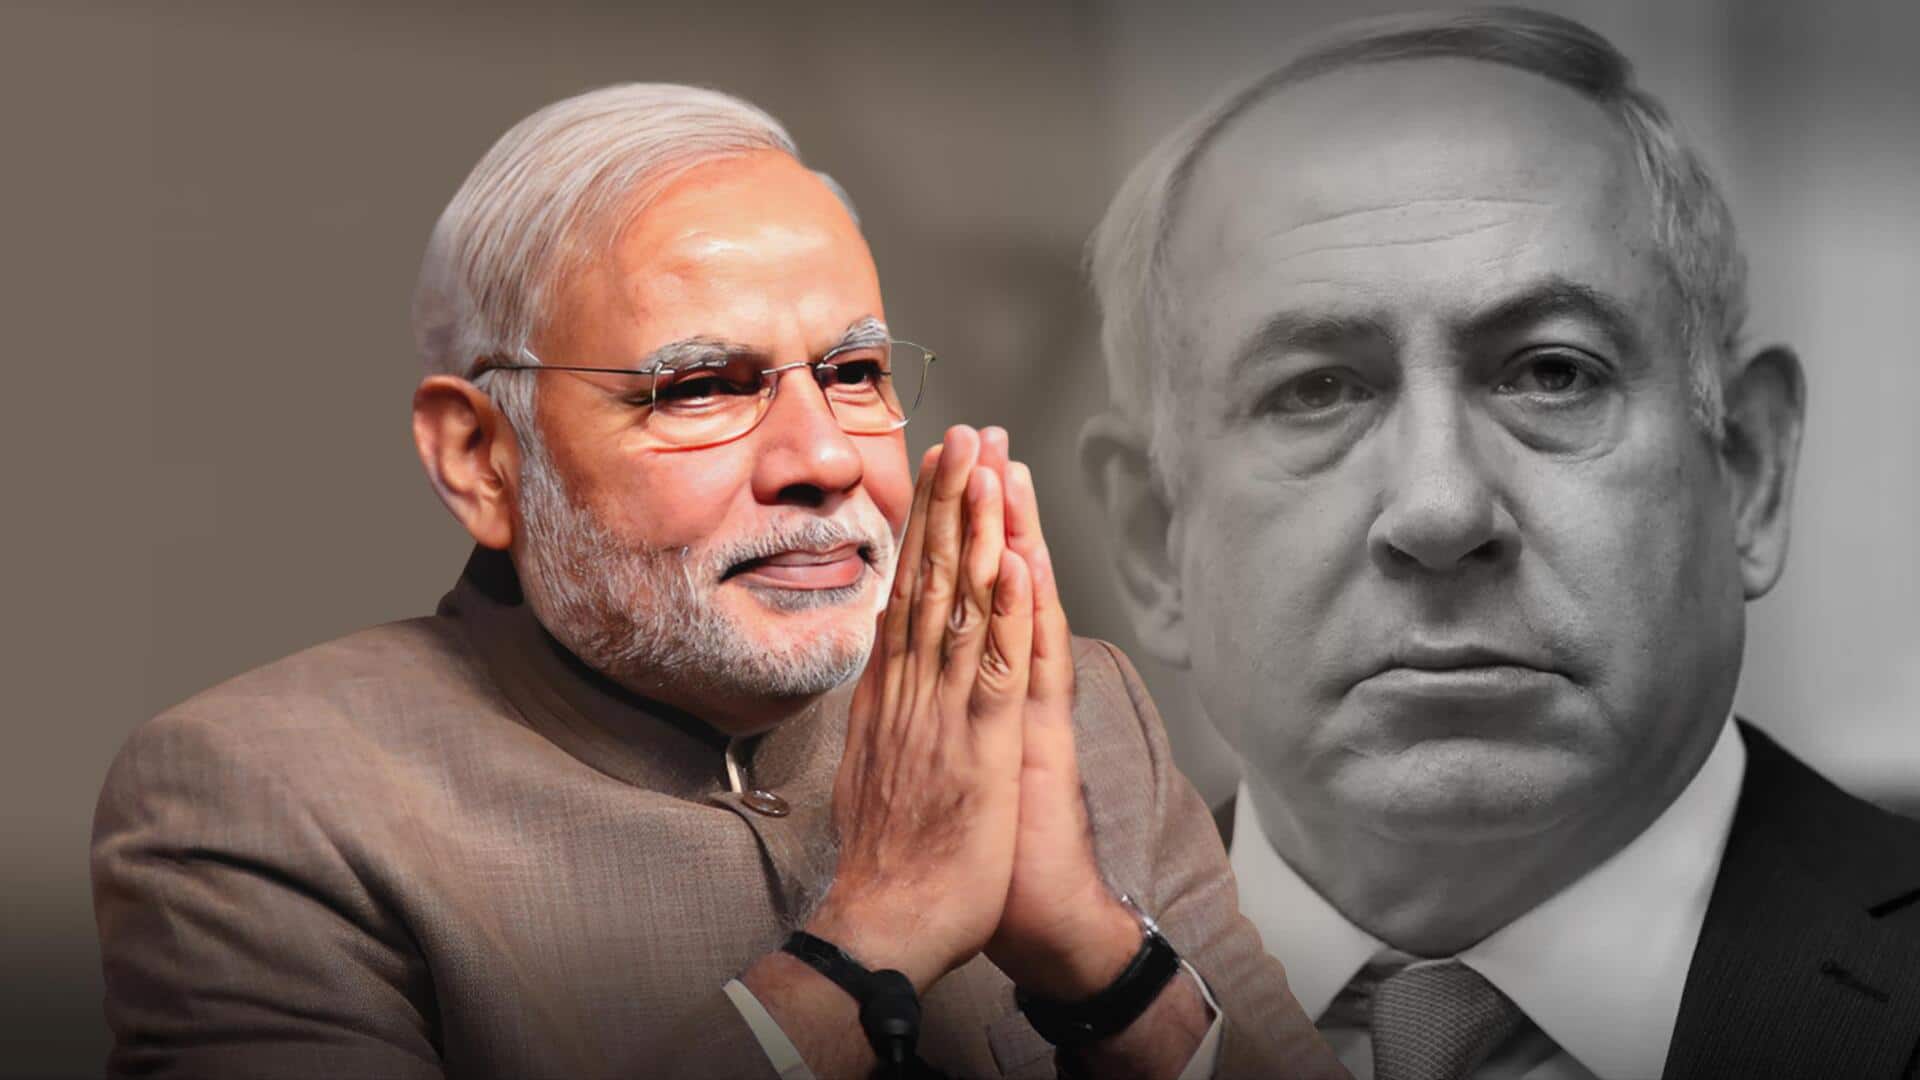 इजरायल पर हमला: प्रधानमंत्री मोदी ने जताई संवेदना, जानें विश्व नेताओं ने क्या कहा